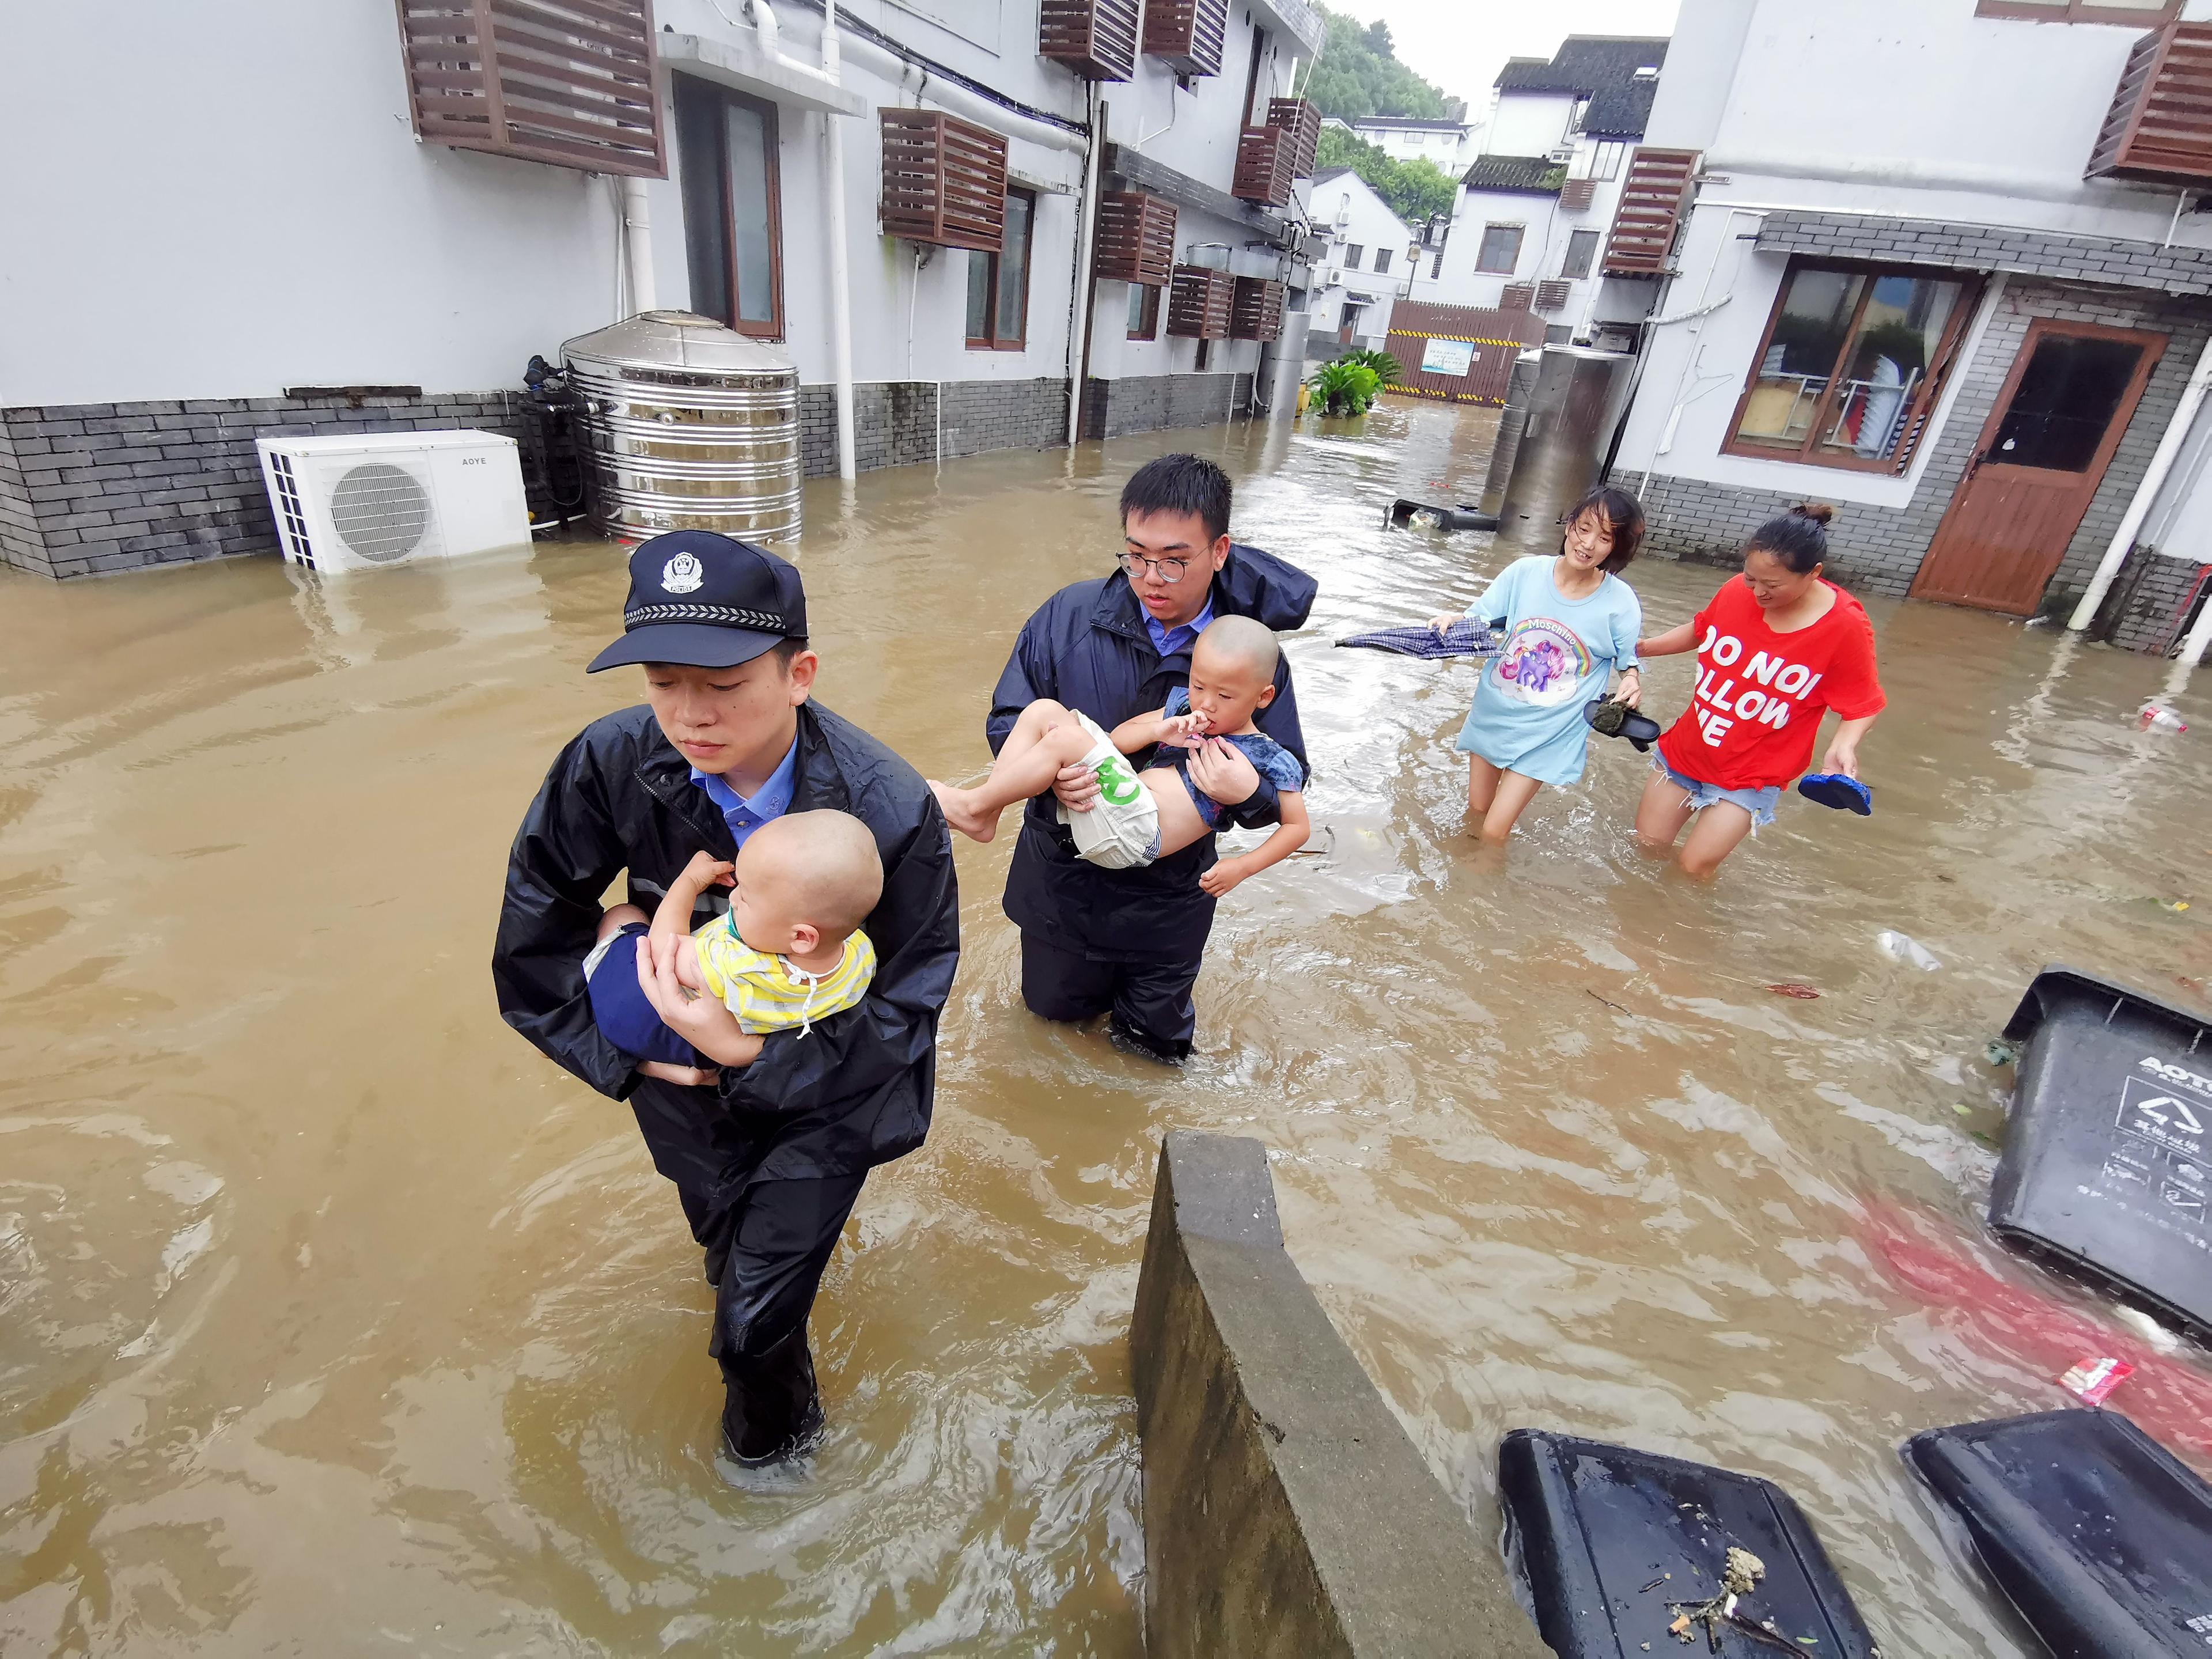 Tajfun poharao Kinu: 28 mrtvih, 20 nestalih, milion evakuiranih...